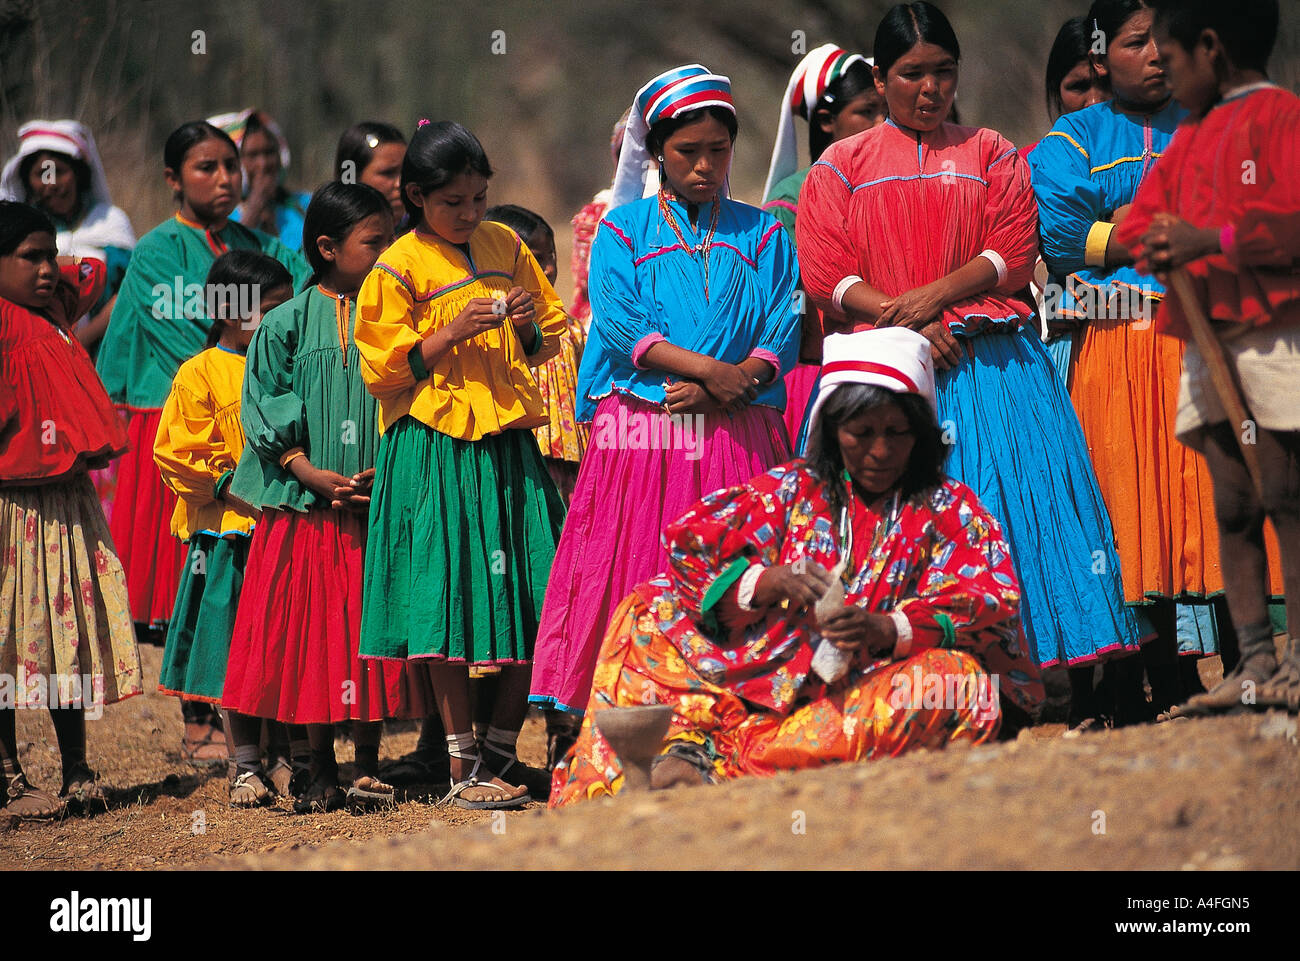 Chihuahua Mexico Tarahumara People Fotos E Imagenes De Stock Alamy